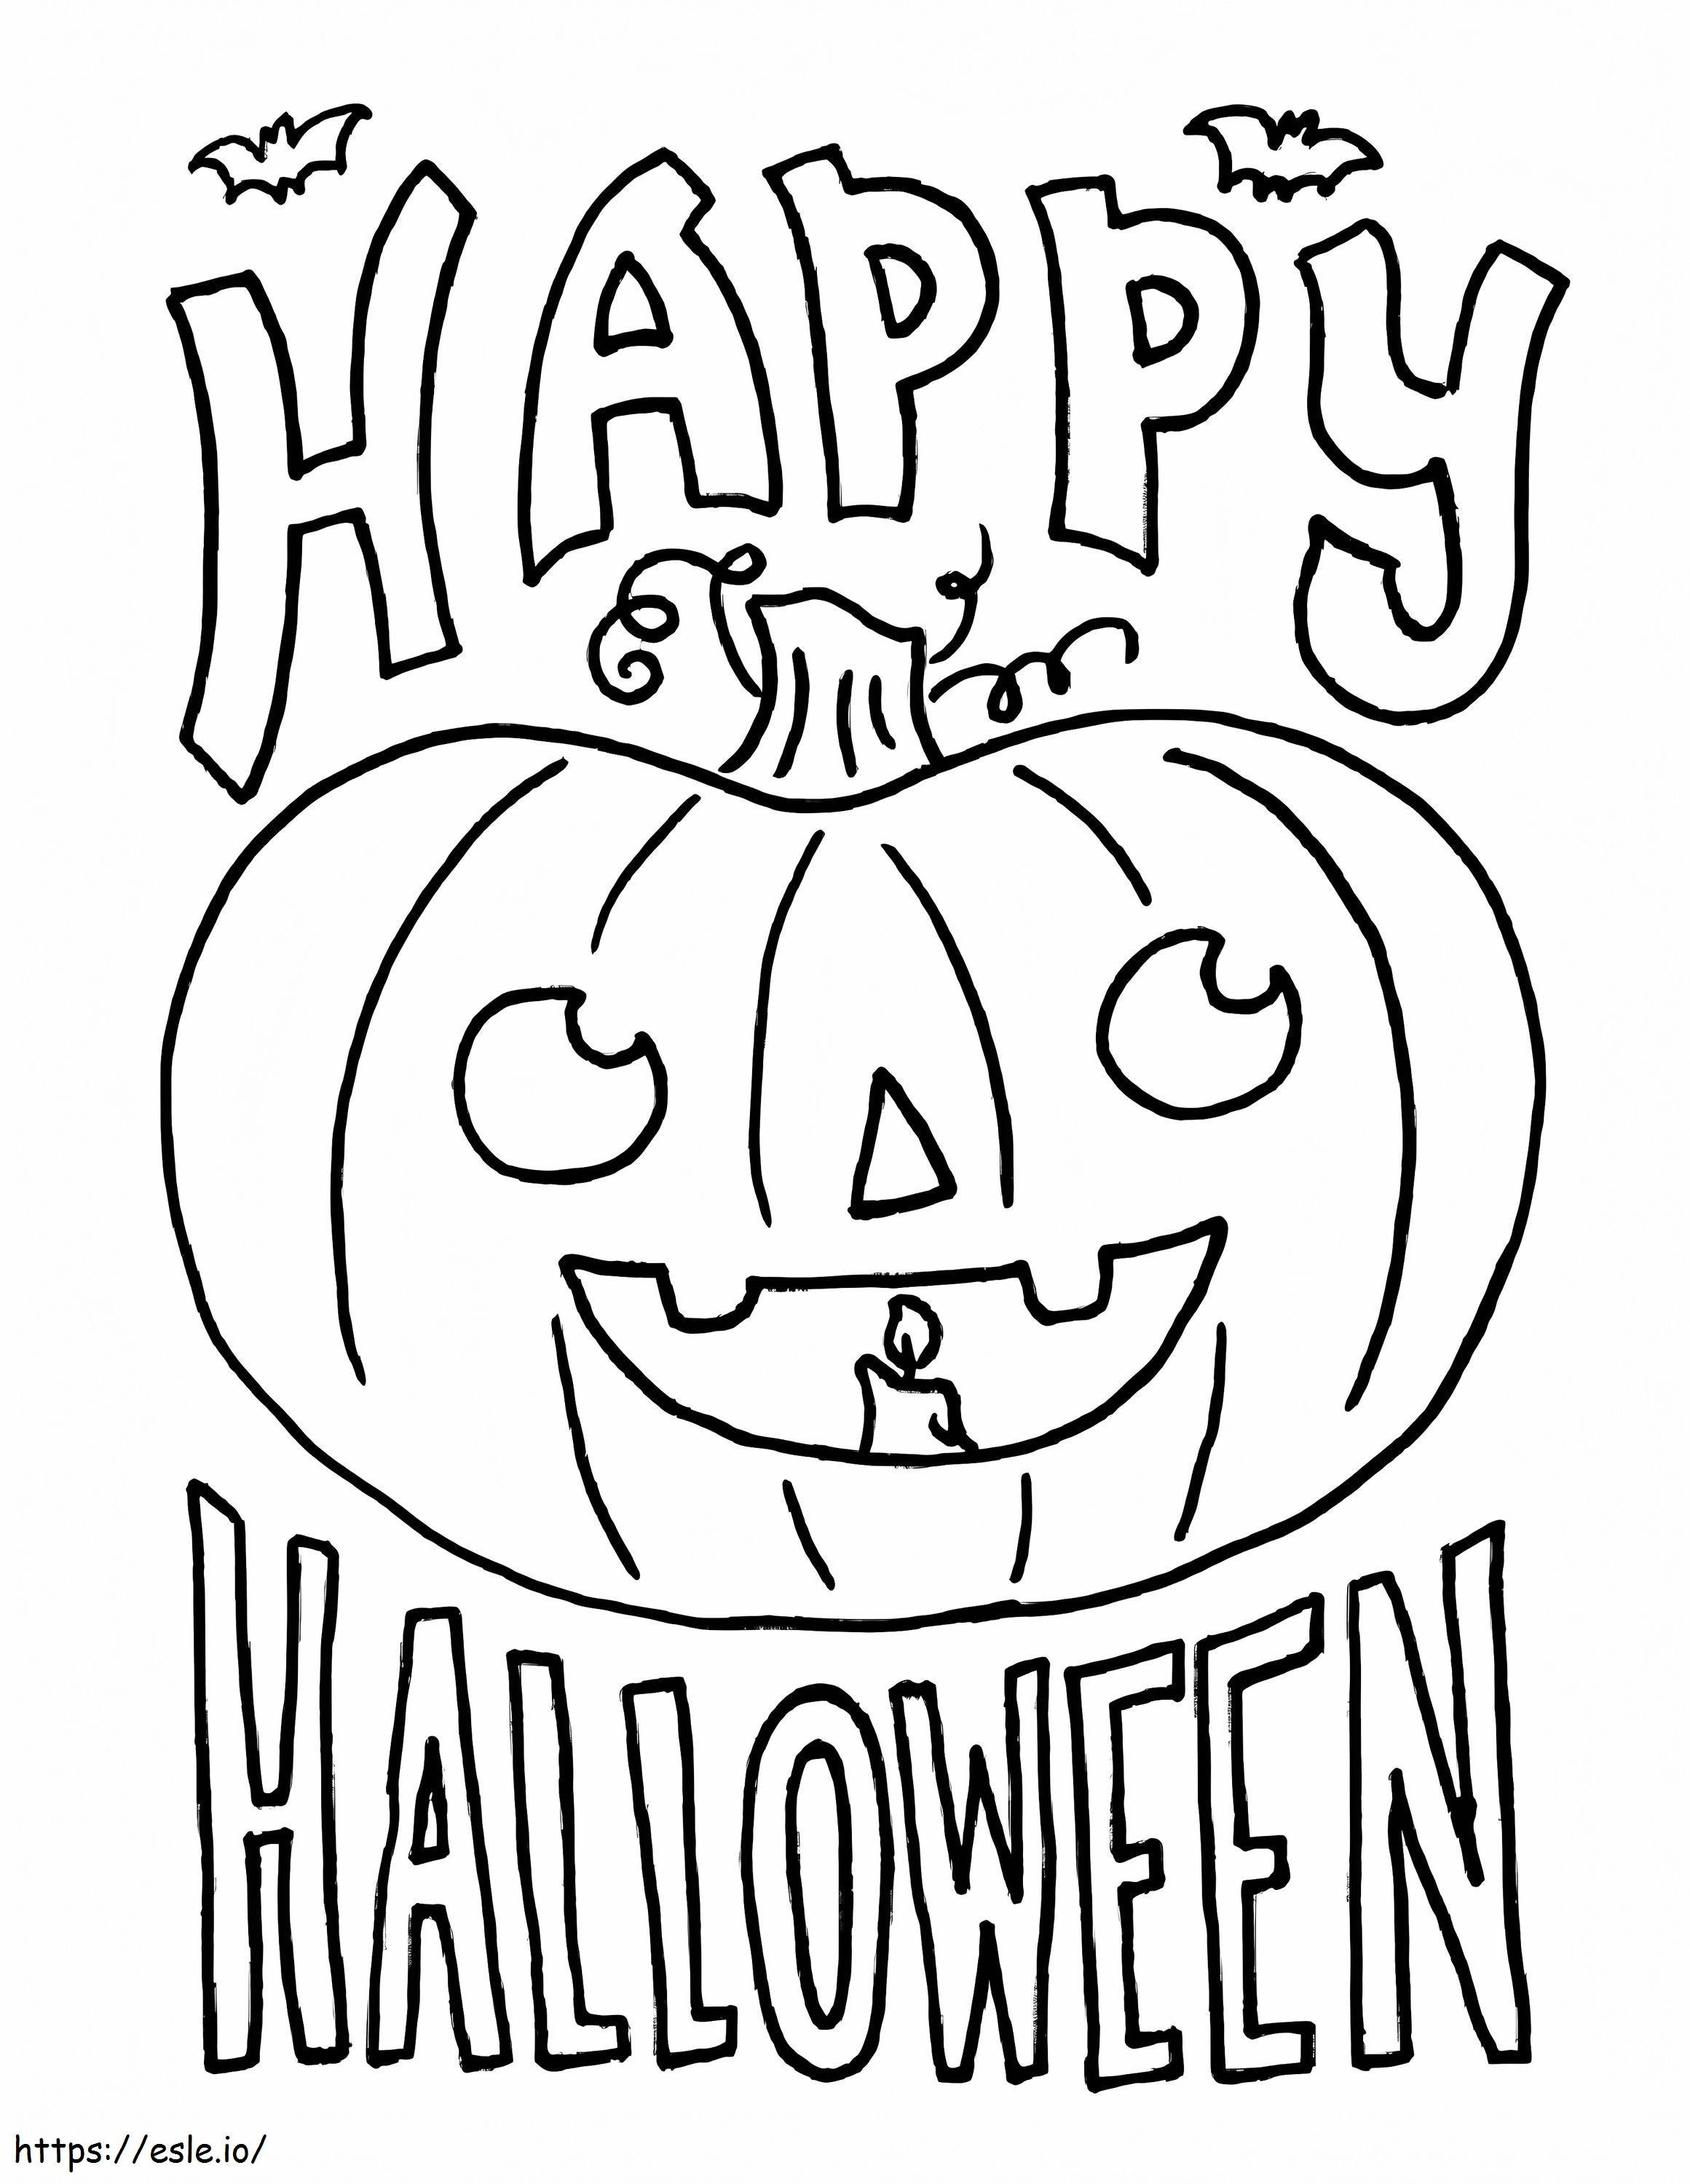 1539676200 Fesselnde Haloween-Malerei für ein schönes Halloween mit ausmalbilder